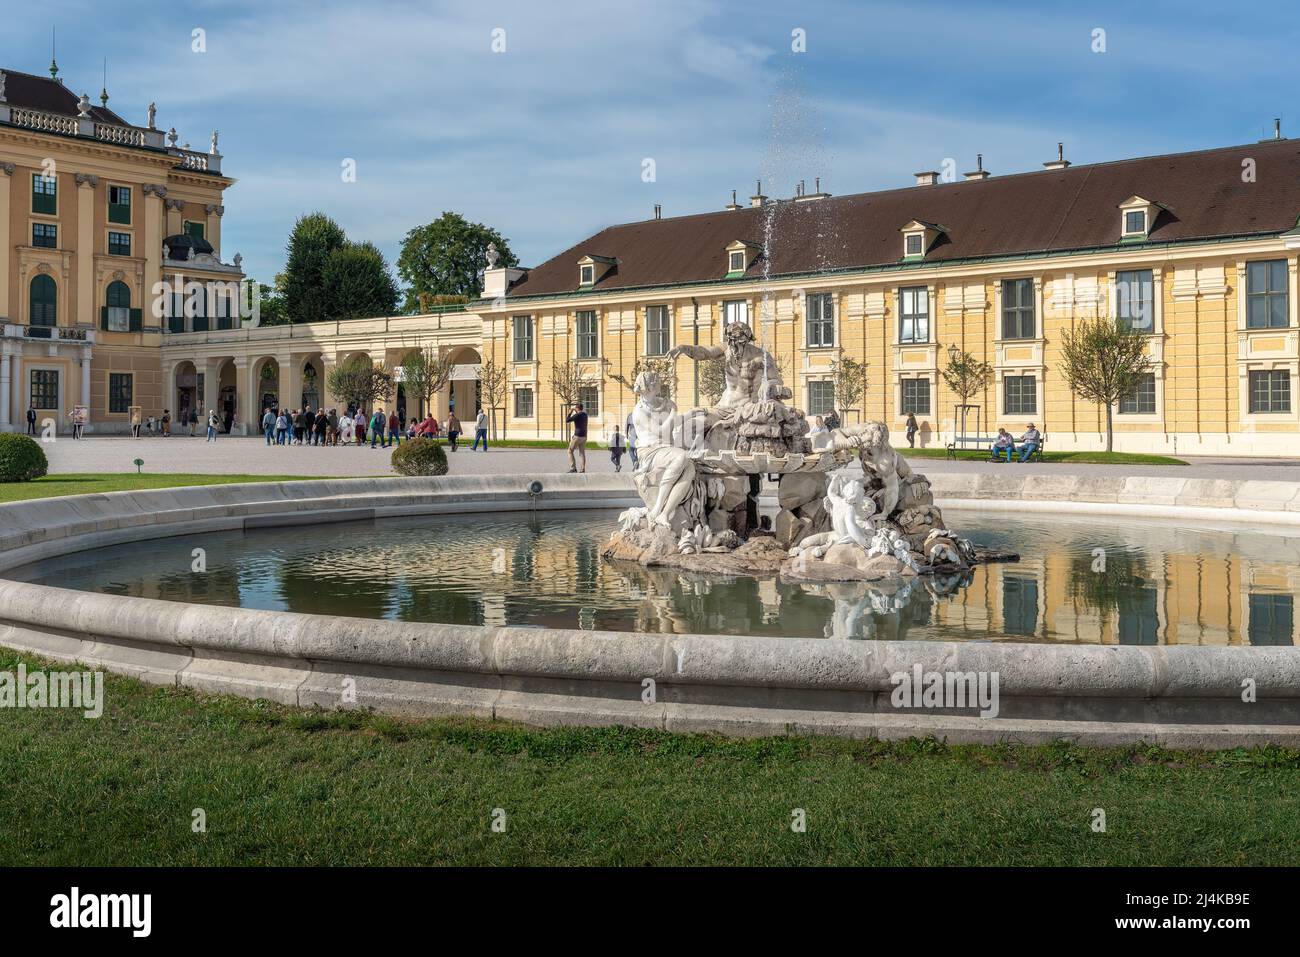 Danube, Inn and Enns fountain at Schonbrunn Palace Forecourt - by Franz Anton von Zauner and Joseph Baptist Hagenauer - Vienna, Austria Stock Photo